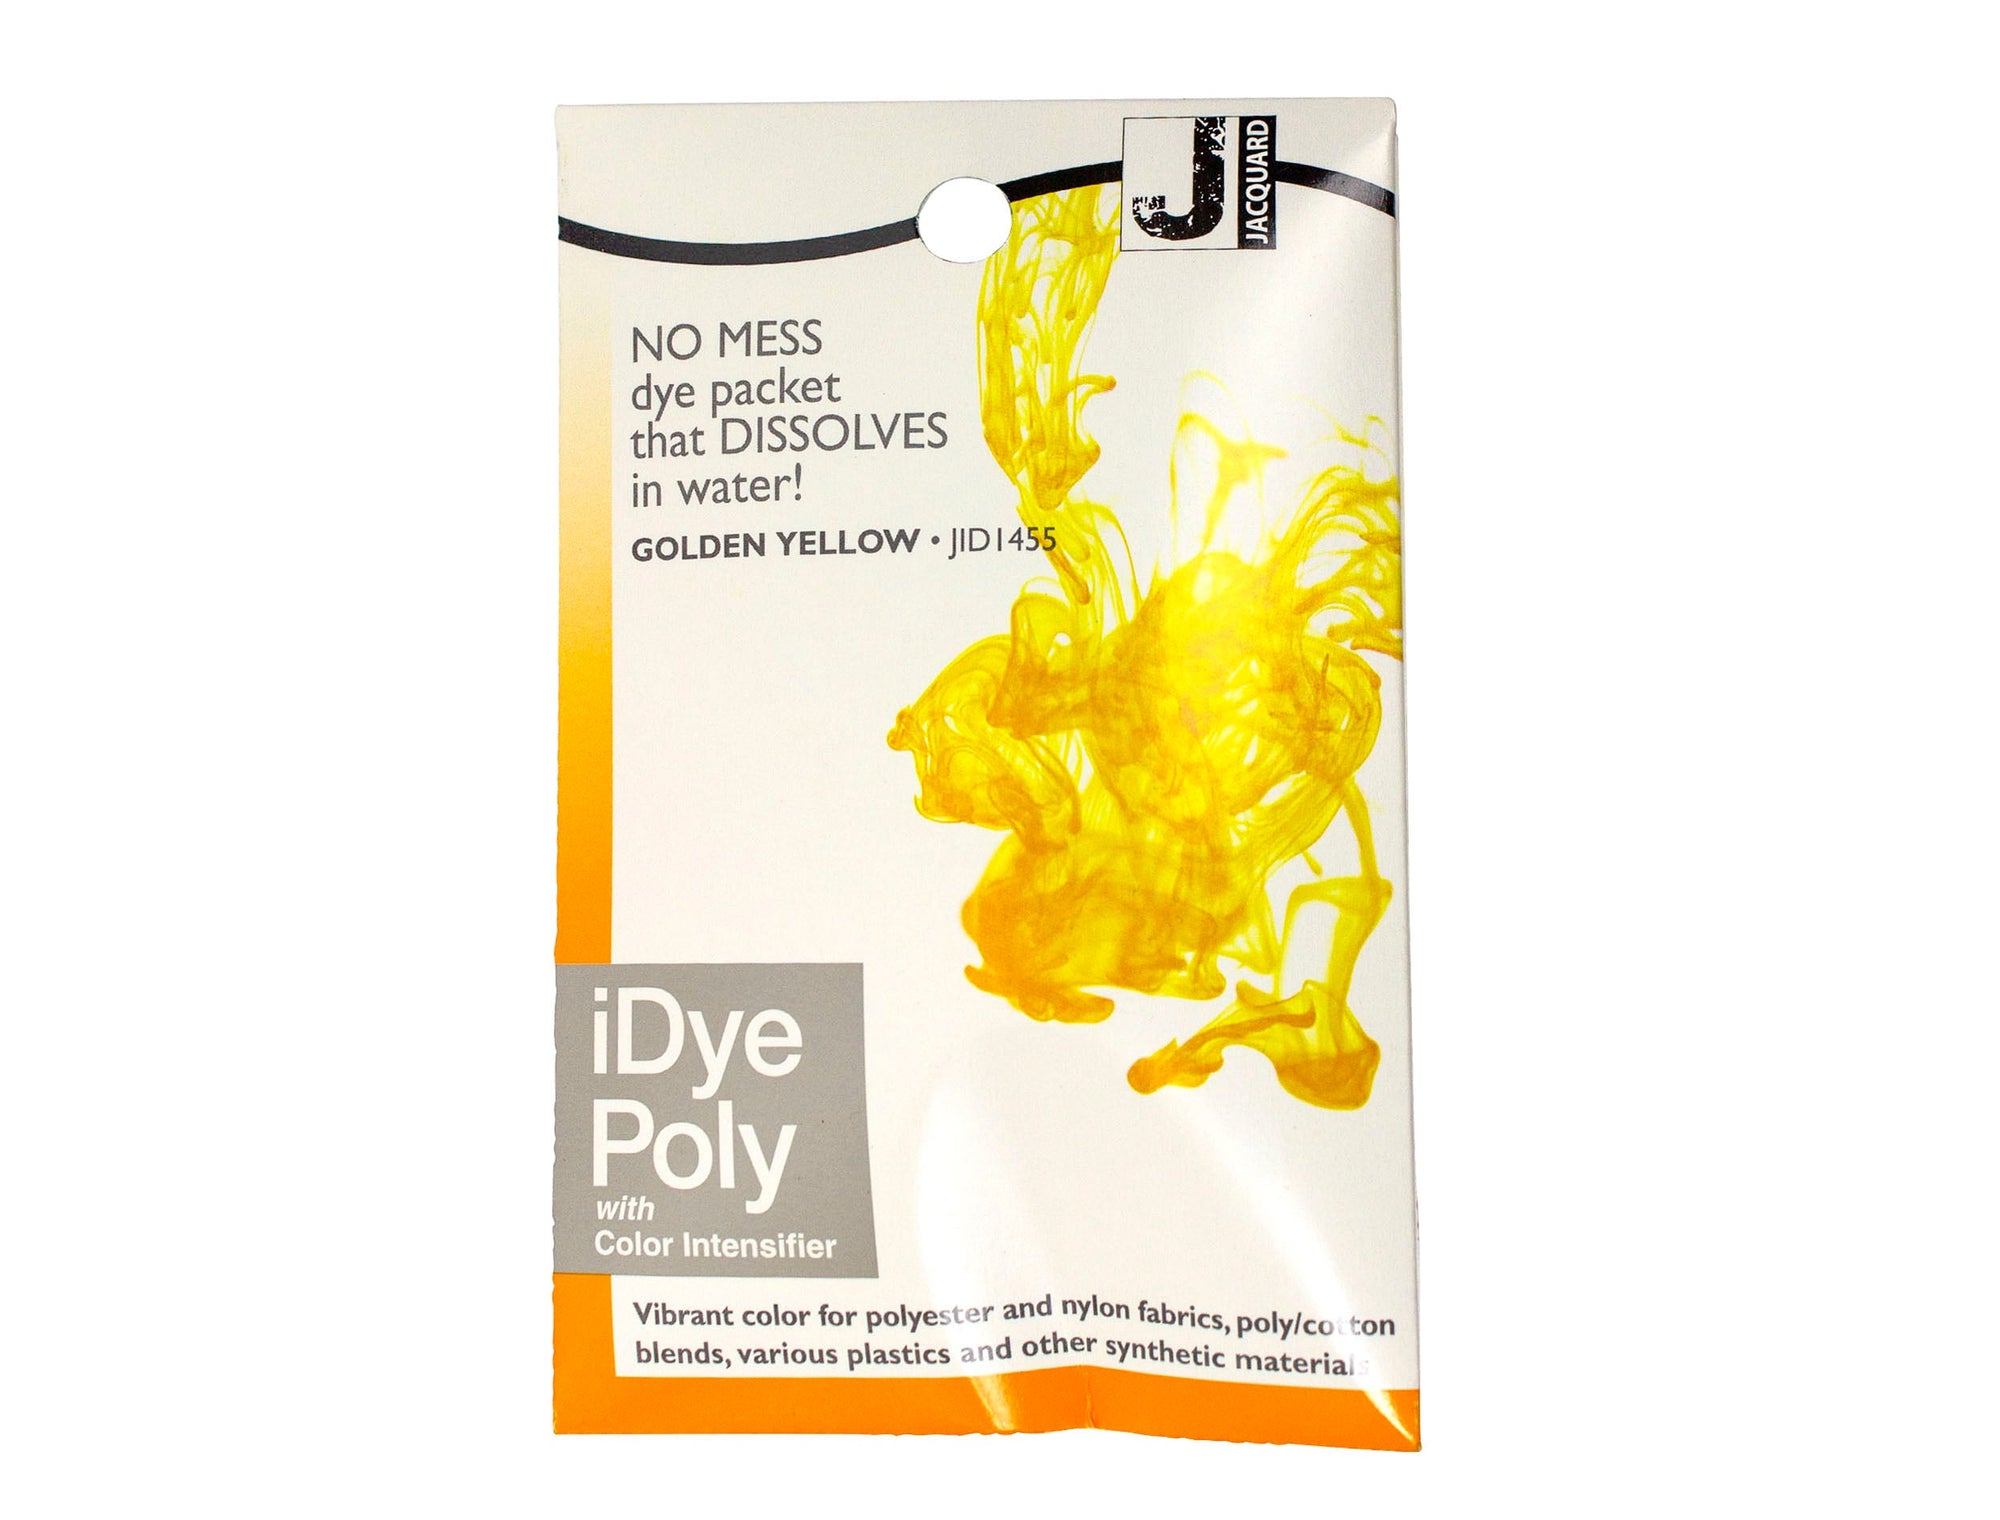 Fabric Dye Polyester & Nylon Fabrics by Jacquard iDye - Full